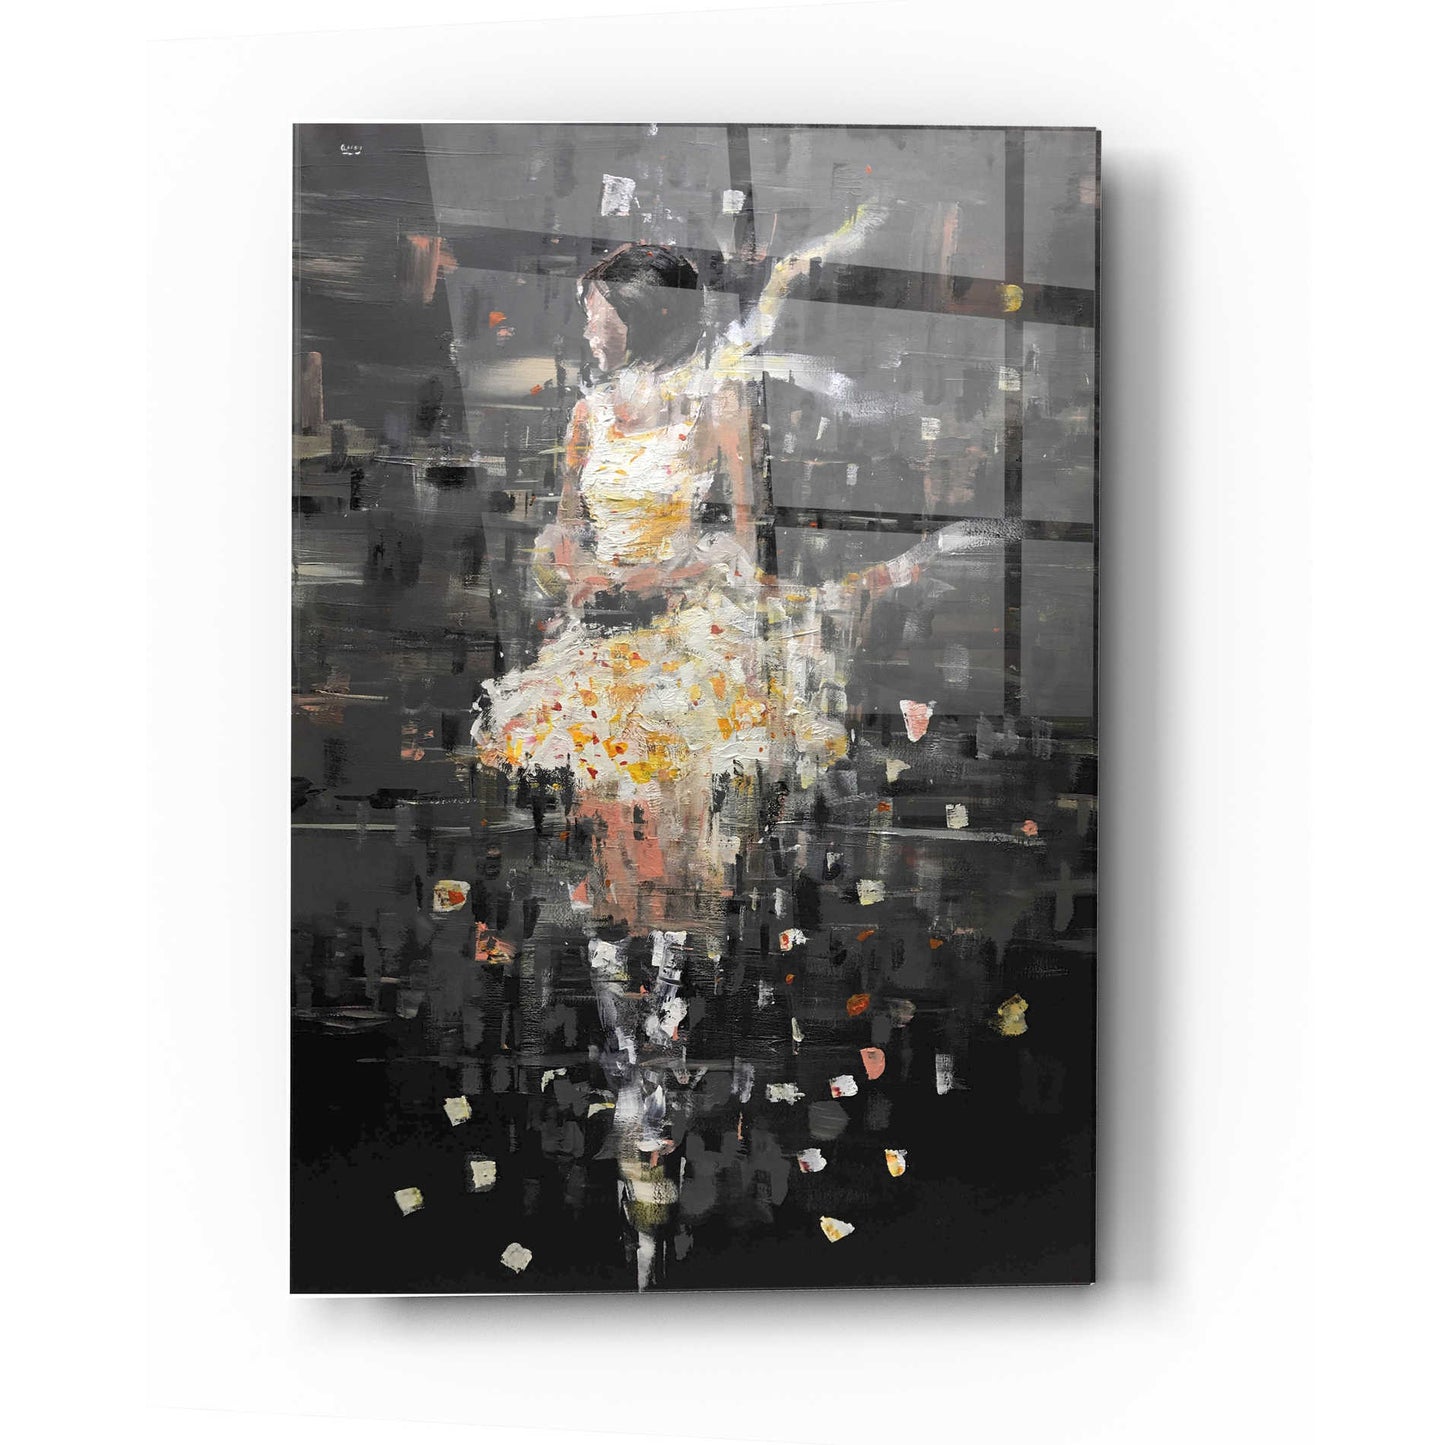 Epic Art 'She's Glowing' by Oscar Alvarez Pardo, Acrylic Glass Wall Art,24x36